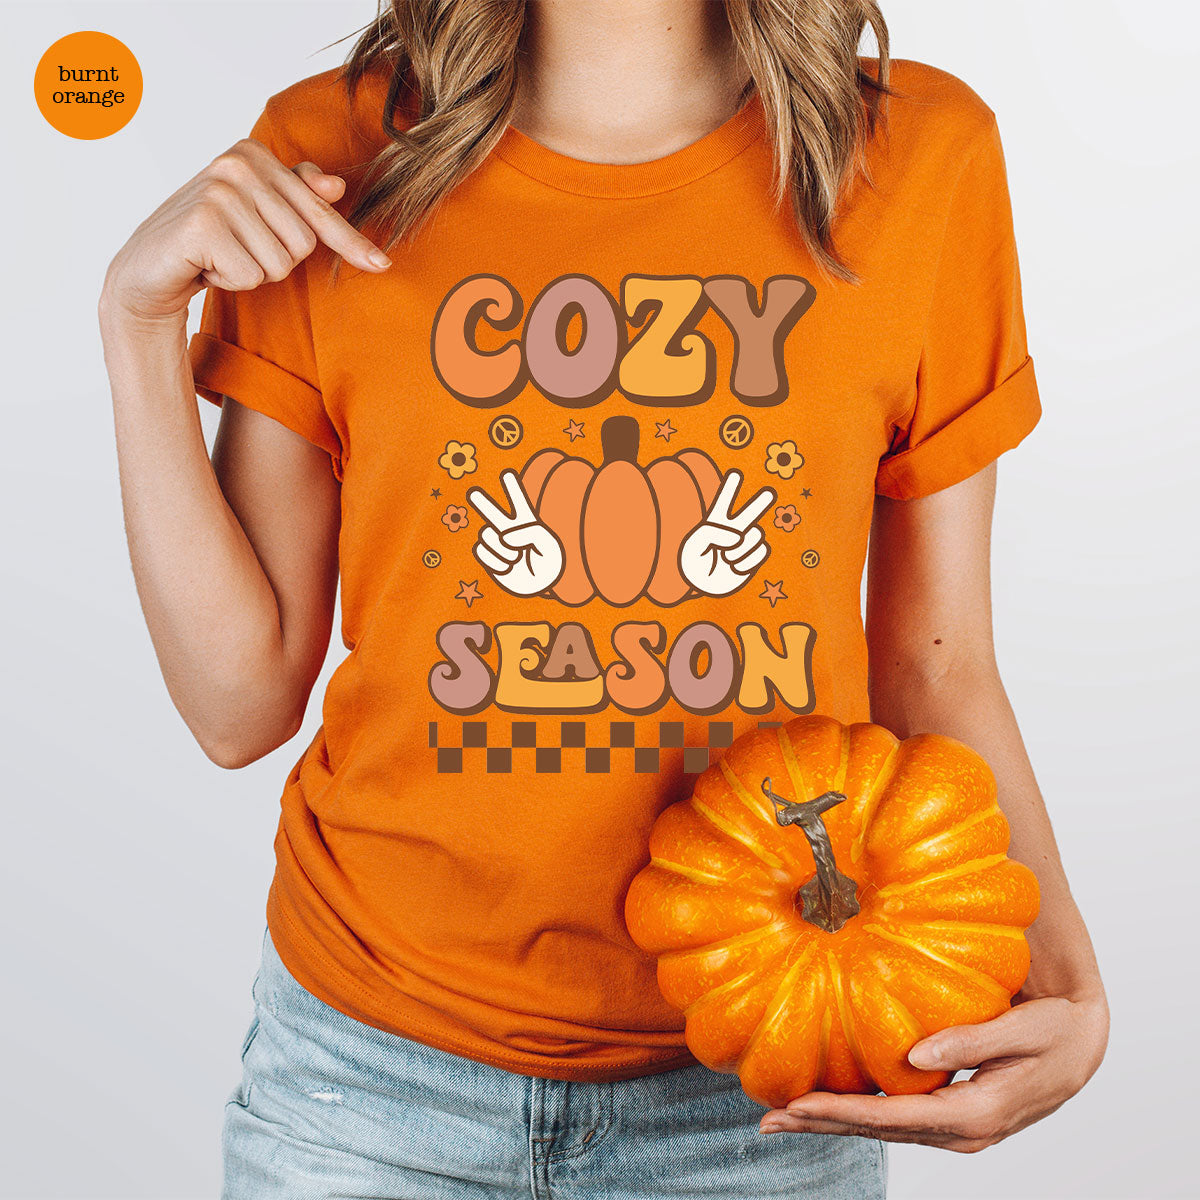 Cozy Thanksgiving Shirt, Funny Thanksgiving T-Shirt, Cozy Season Gee